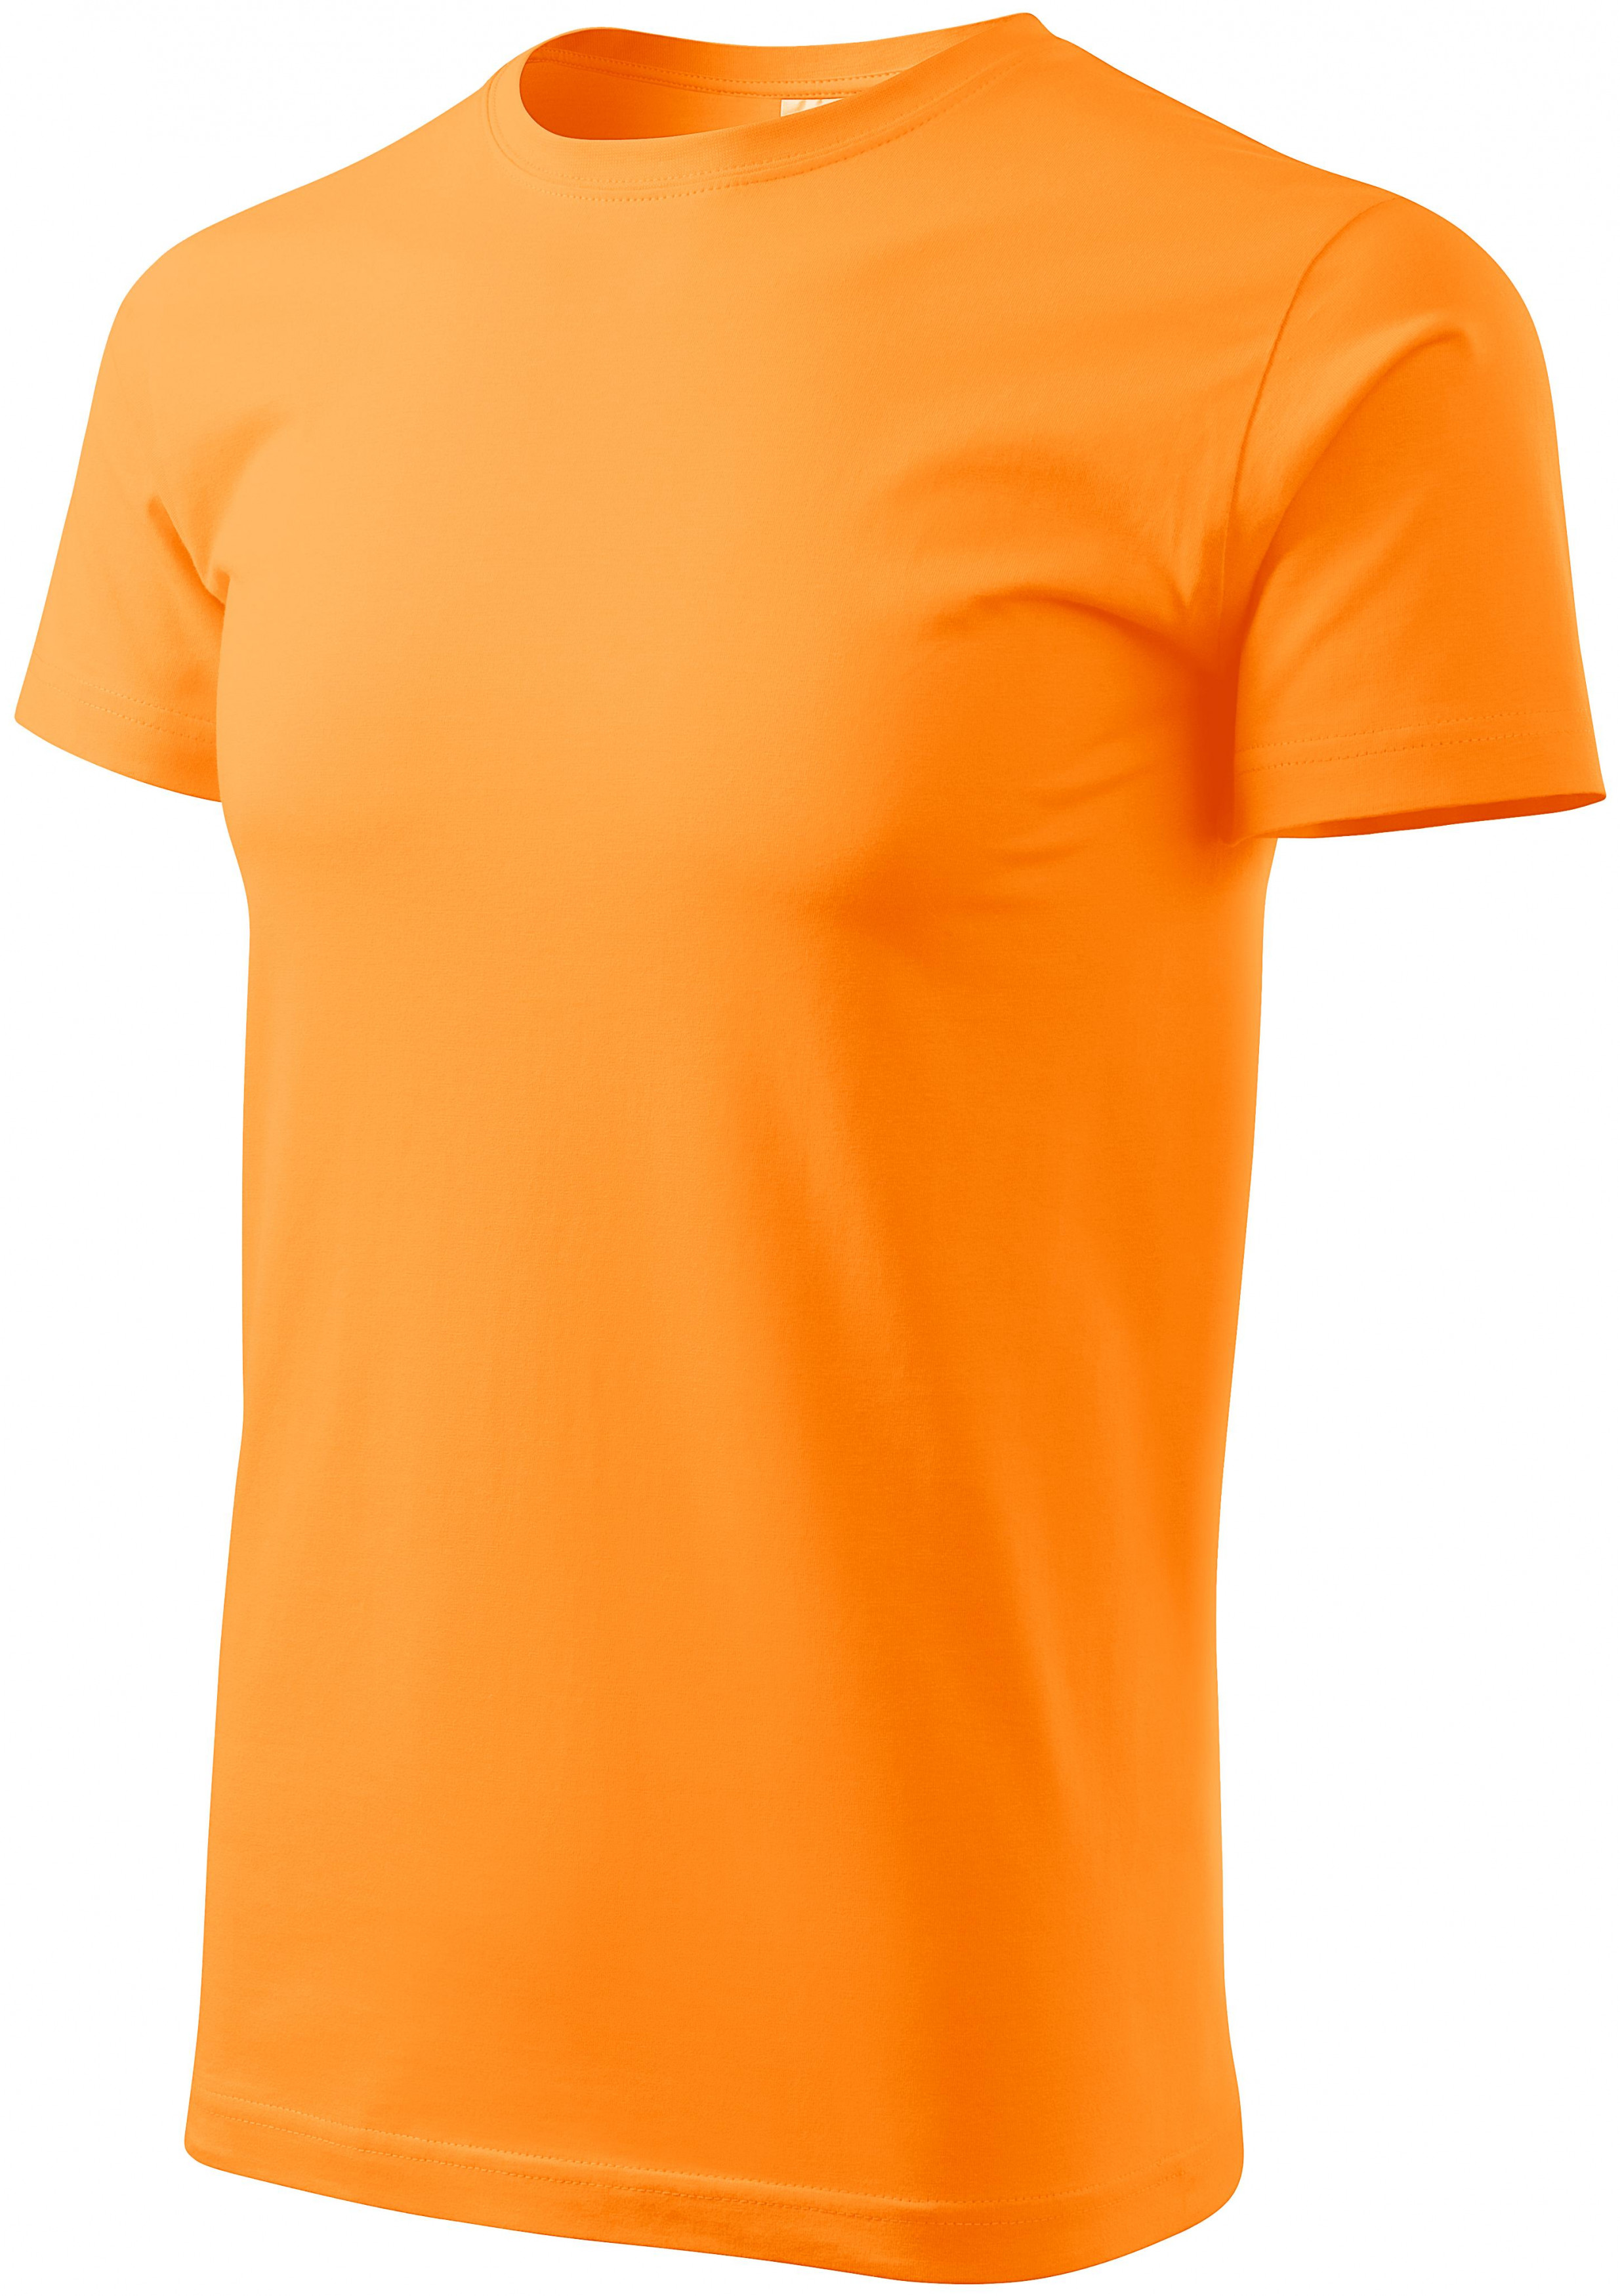 Tričko vyššej gramáže unisex, mandarínková oranžová, S